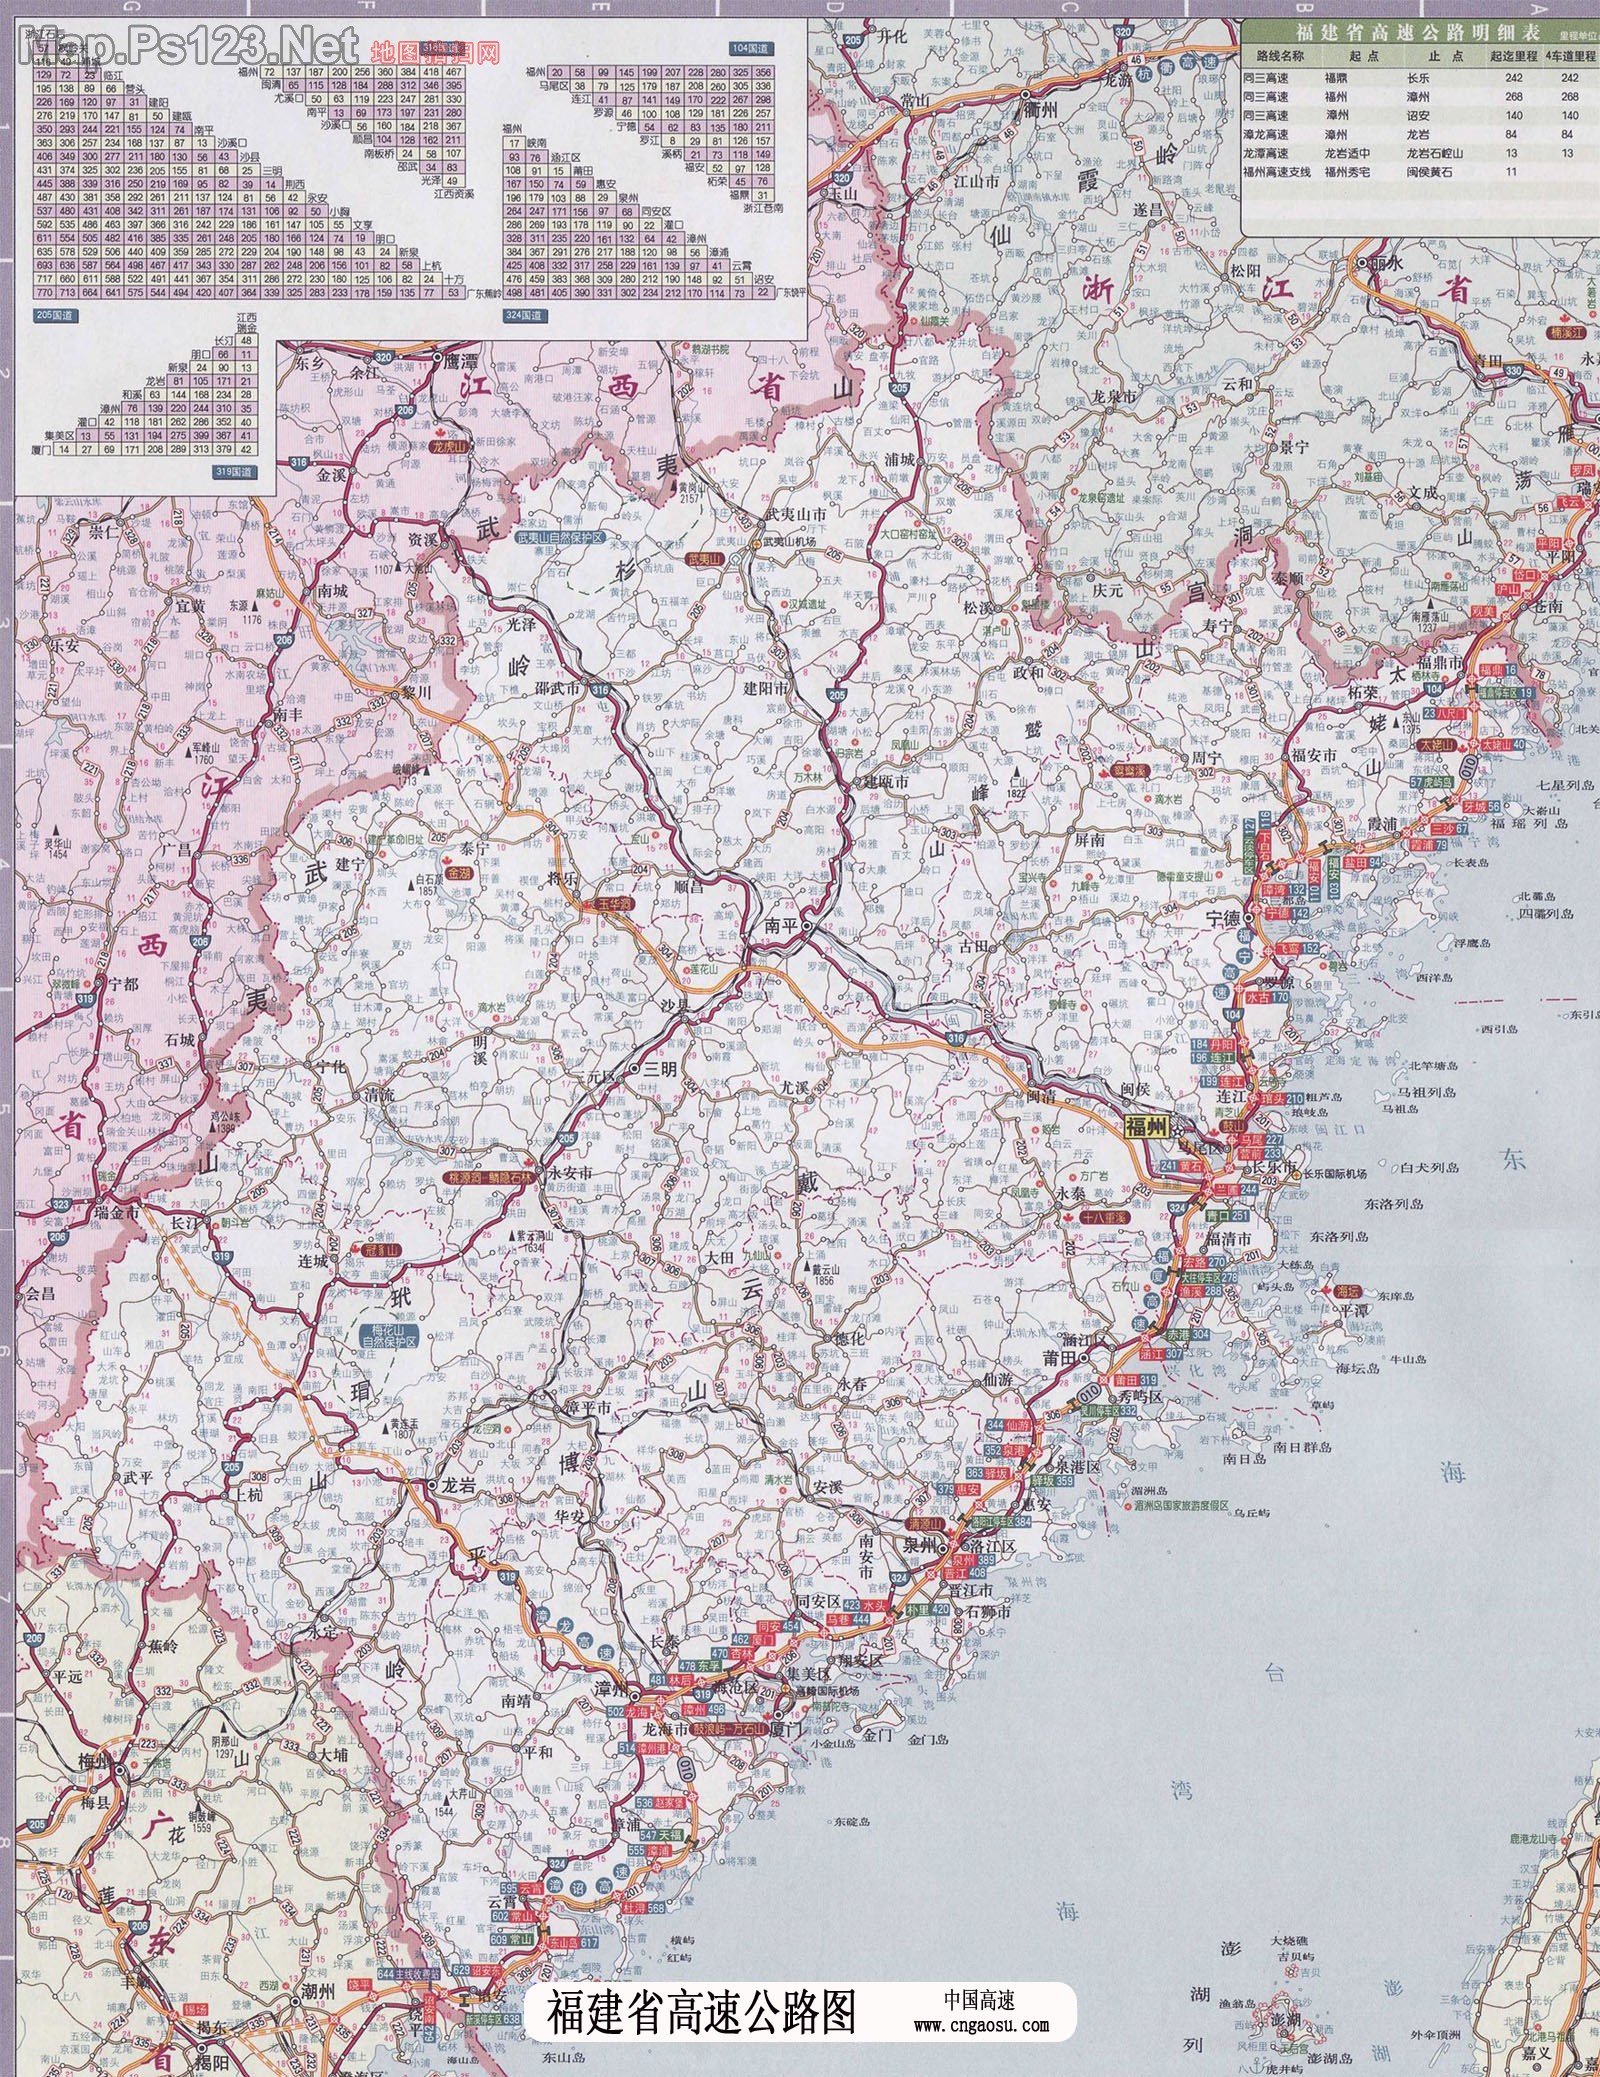 福建省交通地图 - 中国交通地图 - 地理教师网